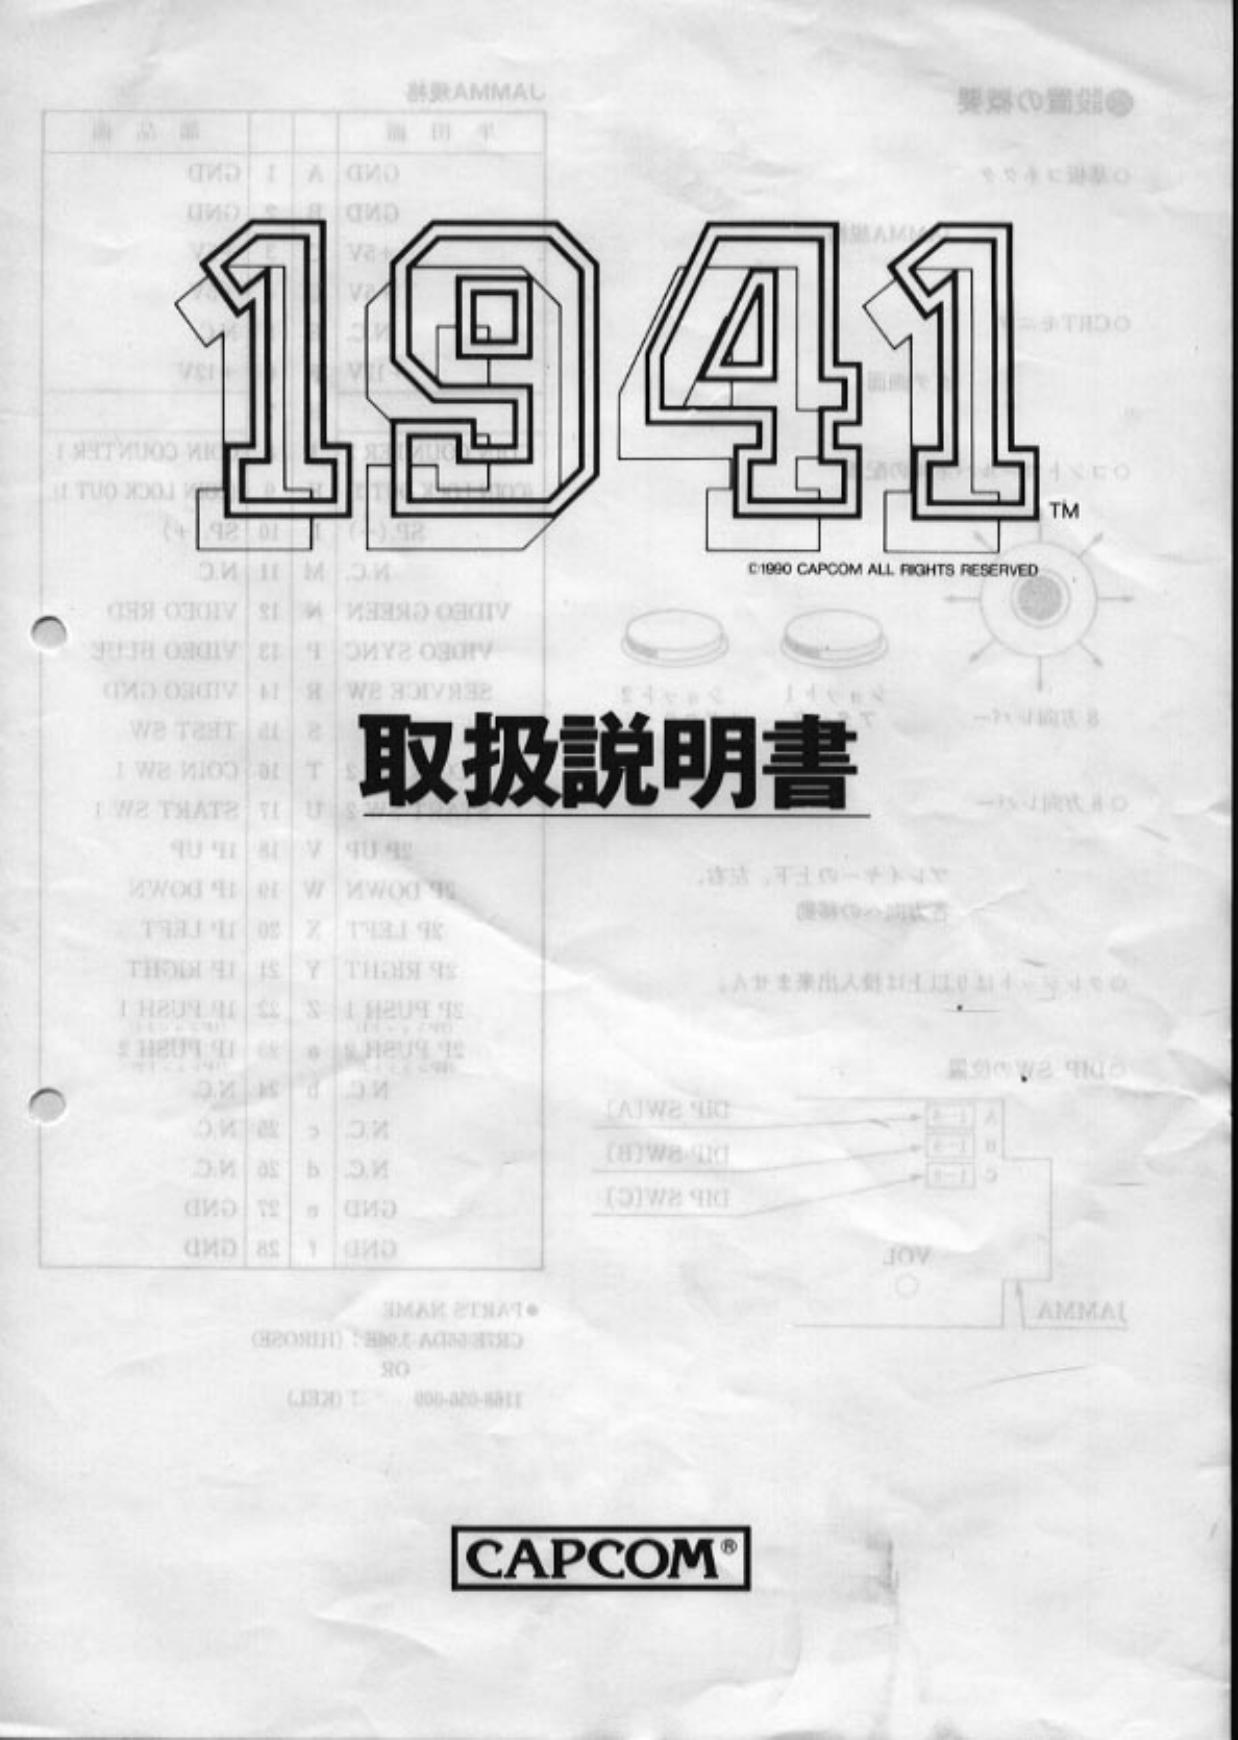 1941 (jap)